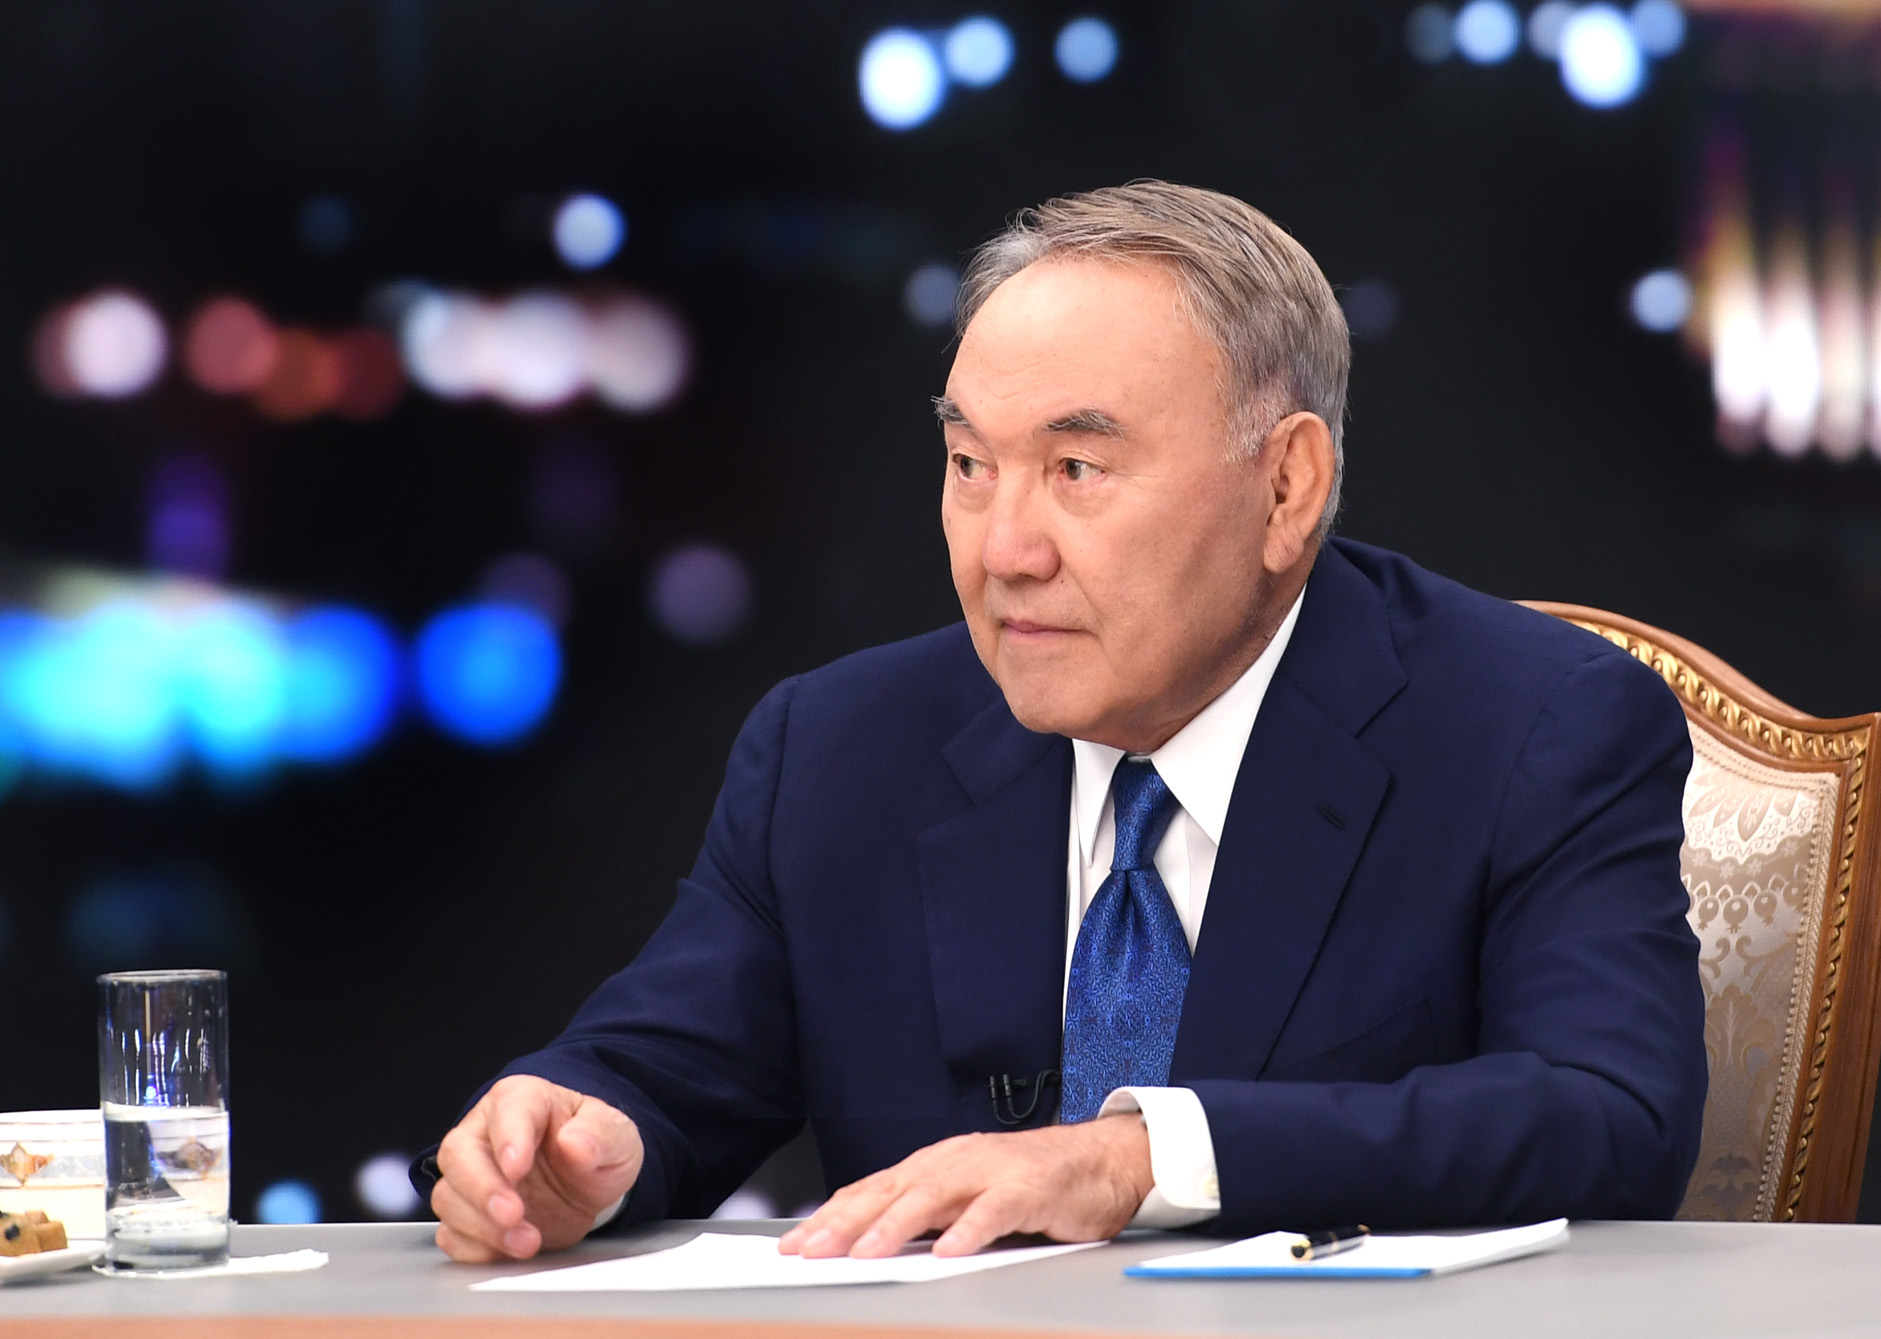 Нурсултан Назарбаев провёл встречу с представителями отечественных средств массовой информации по итогам года